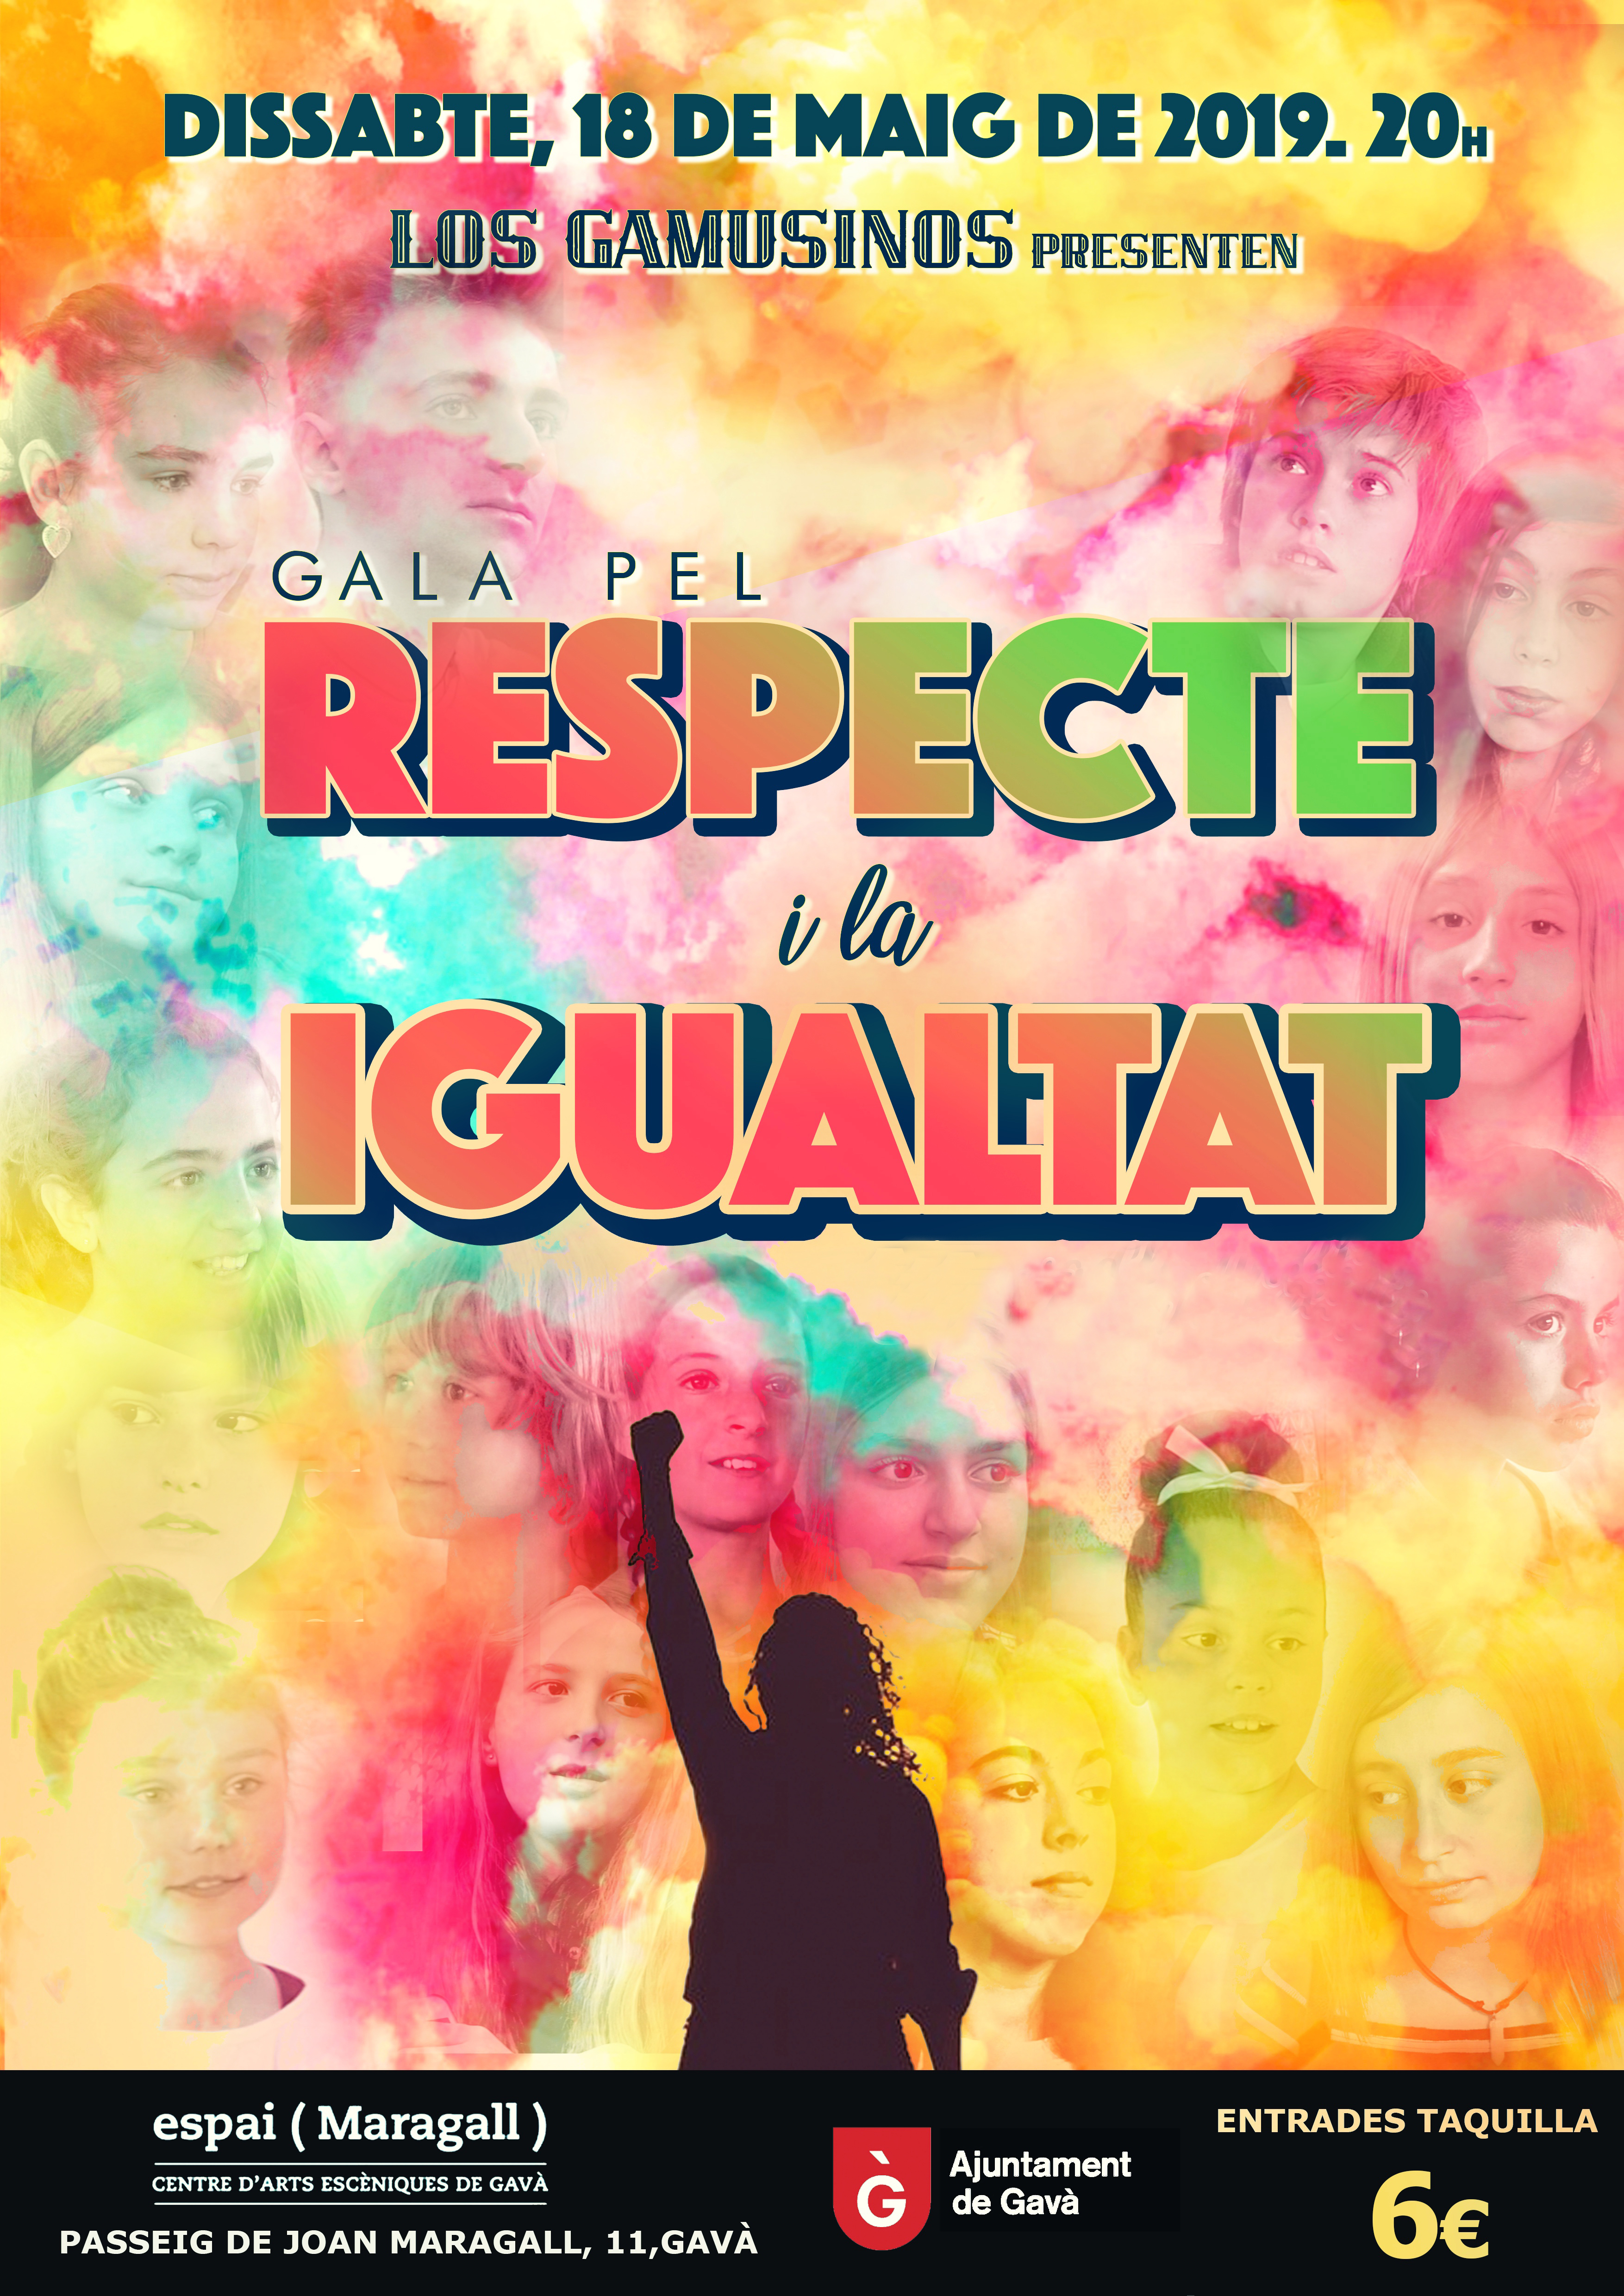 GALA PEL RESPECTE I LA IGUALTAT ( companyia Els Gamusinos)